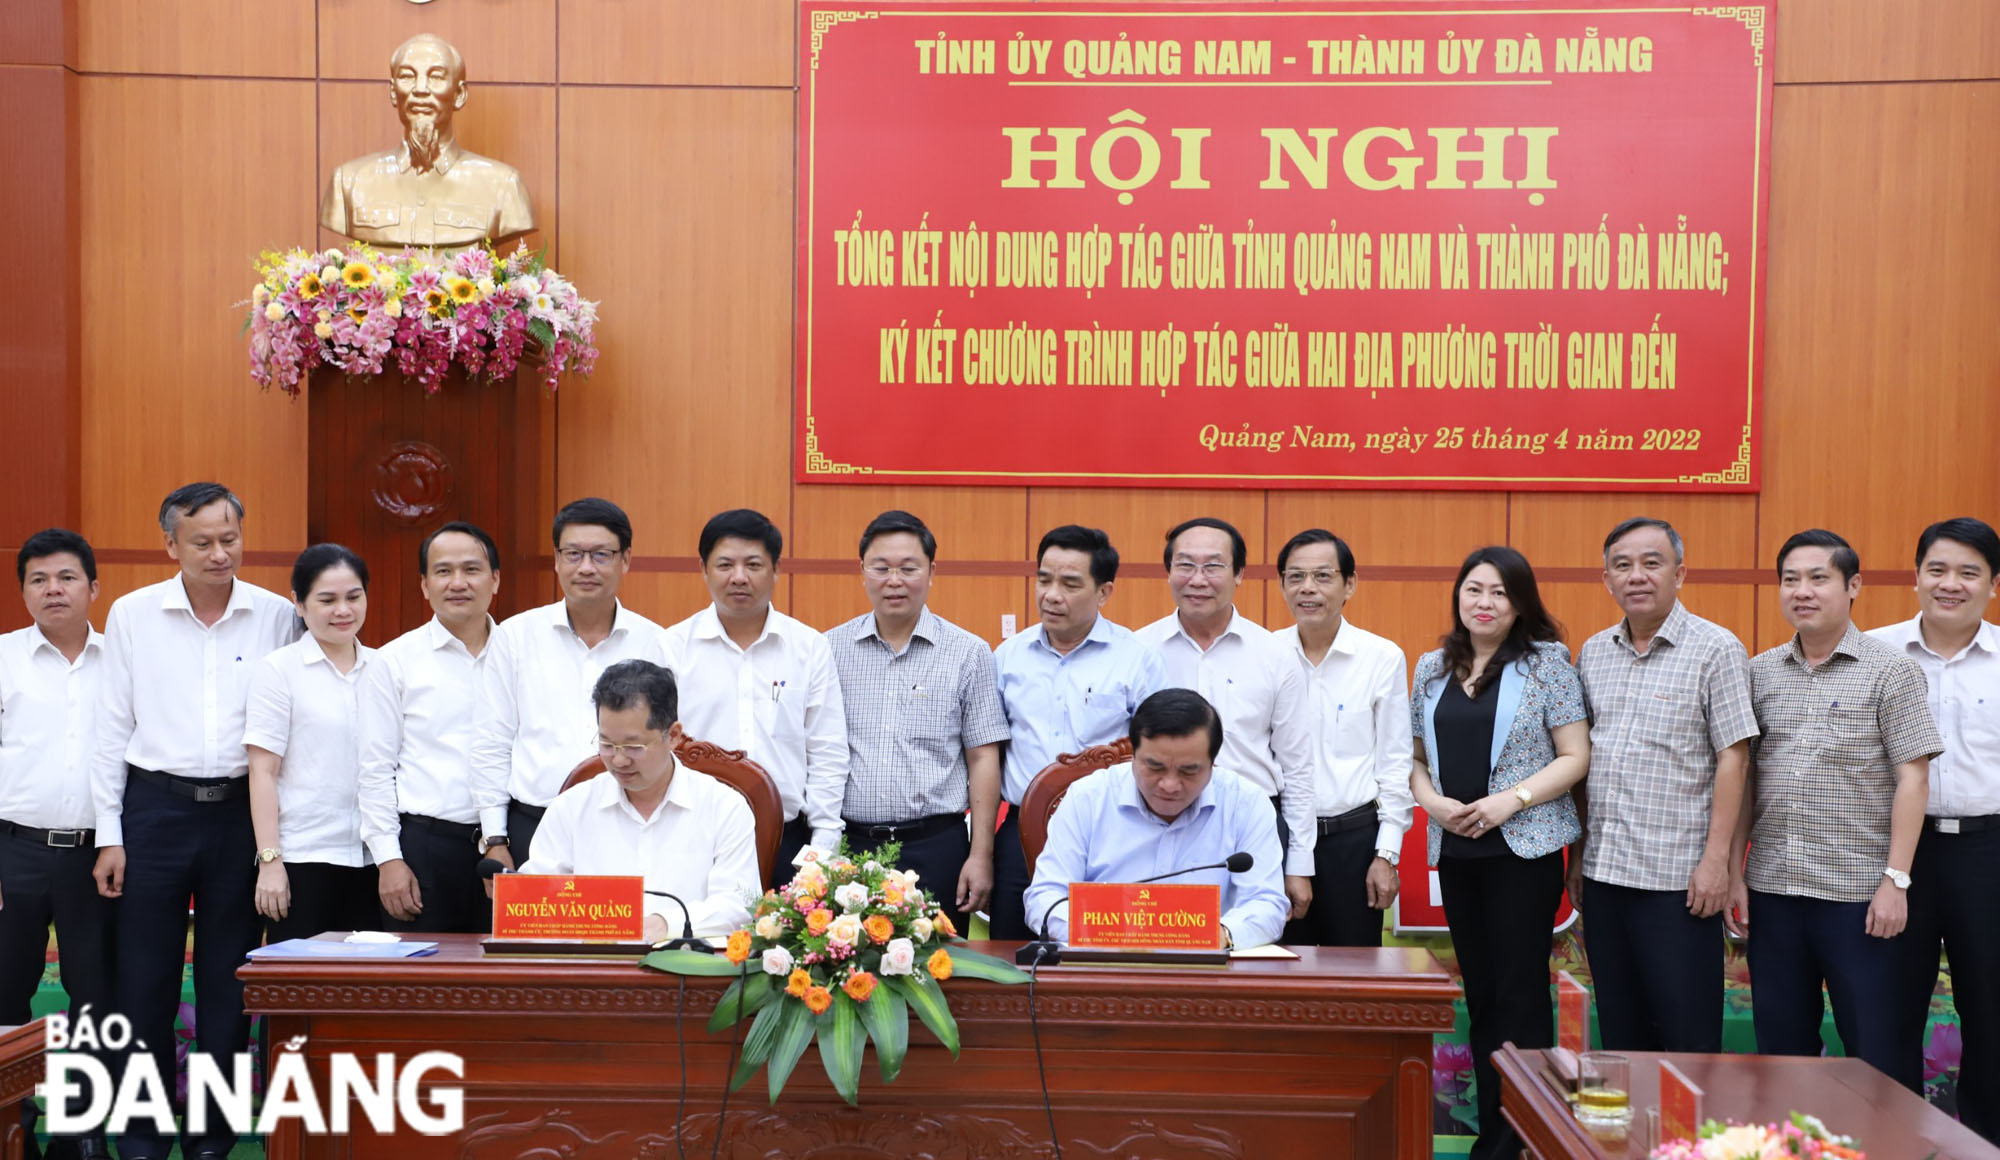 Bí thư Thành ủy Nguyễn Văn Quảng (ngồi hàng đầu bên trái) và ông Phan Việt Cường (ngồi, bên phải) ký kết chương trình hợp tác, phát triển giữa 2 địa phương trong thời gian tới. Ảnh: NGỌC PHÚ.